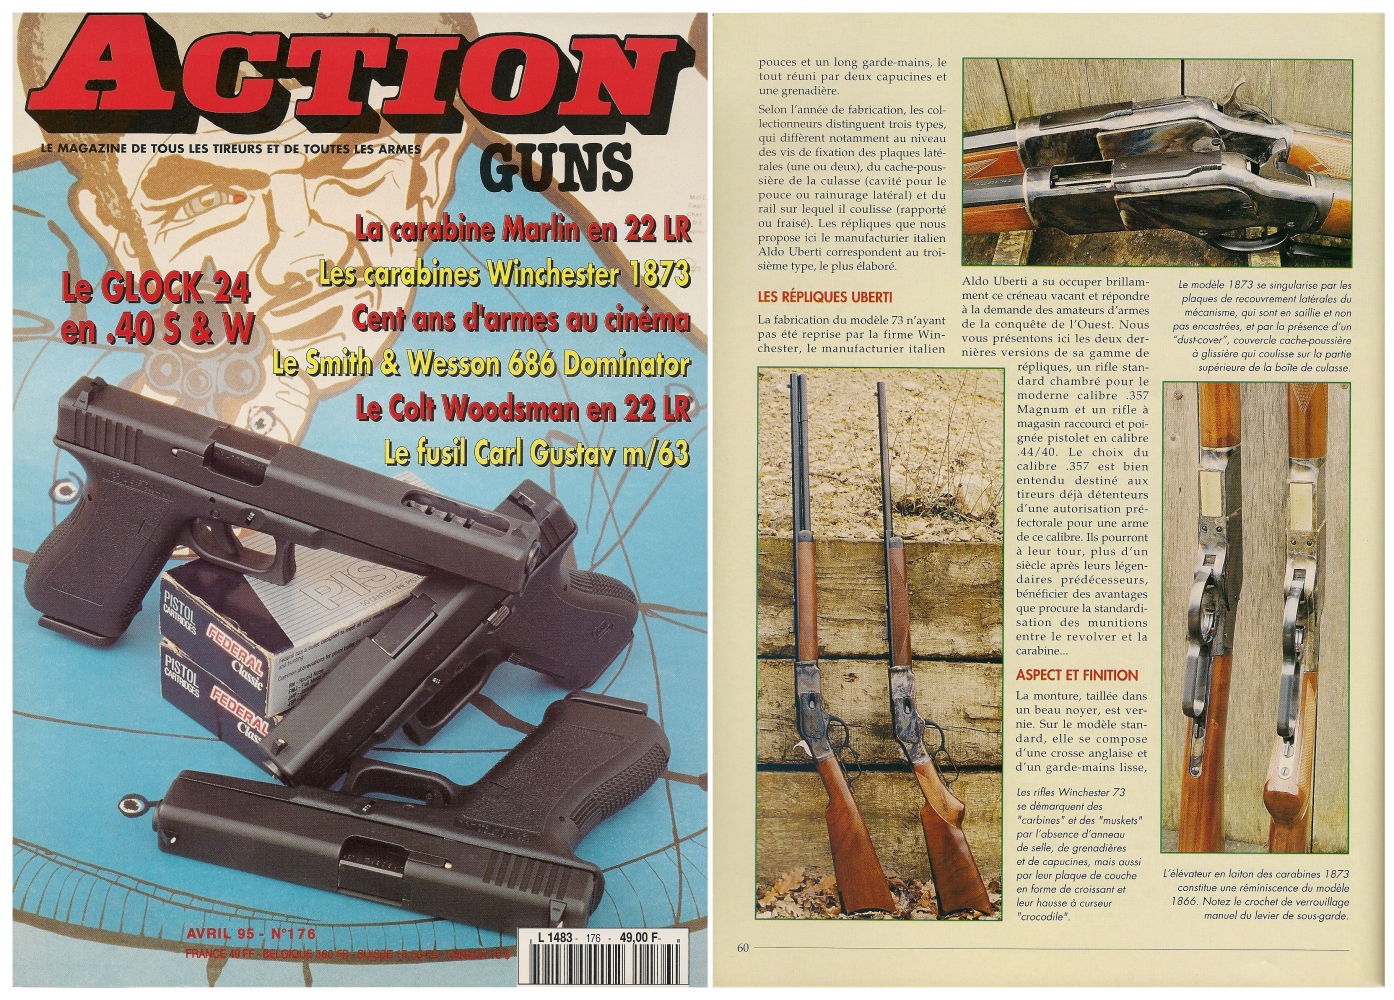 Le banc d'essai des carabine Winchester modèle 1873 a été publié sur 5 pages dans le magazine Action Guns n° 176 (avril 1995). 